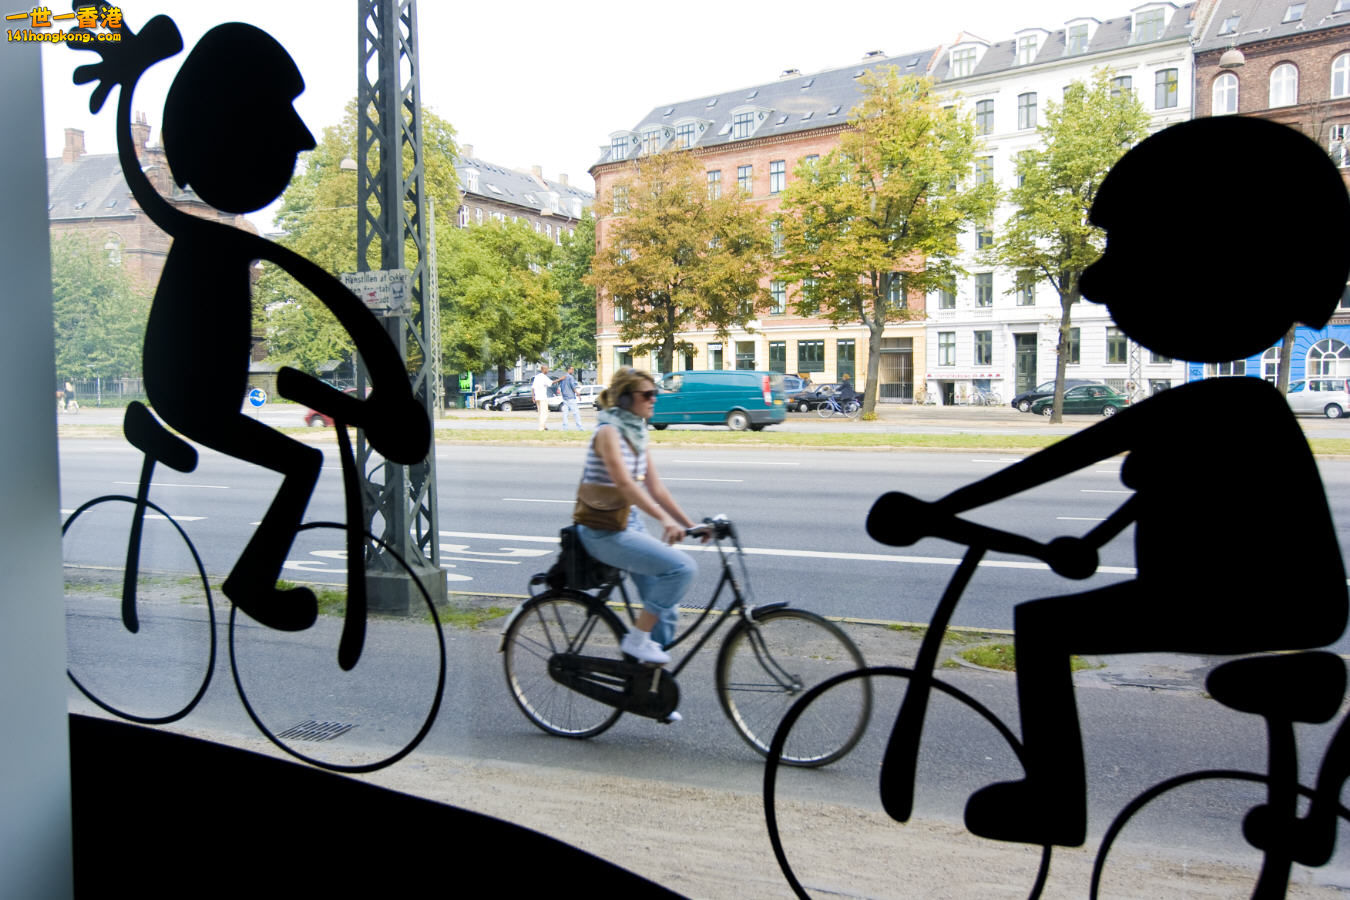 bike-in-Copenhagen-by-photographer-Kasper-Thye.jpg